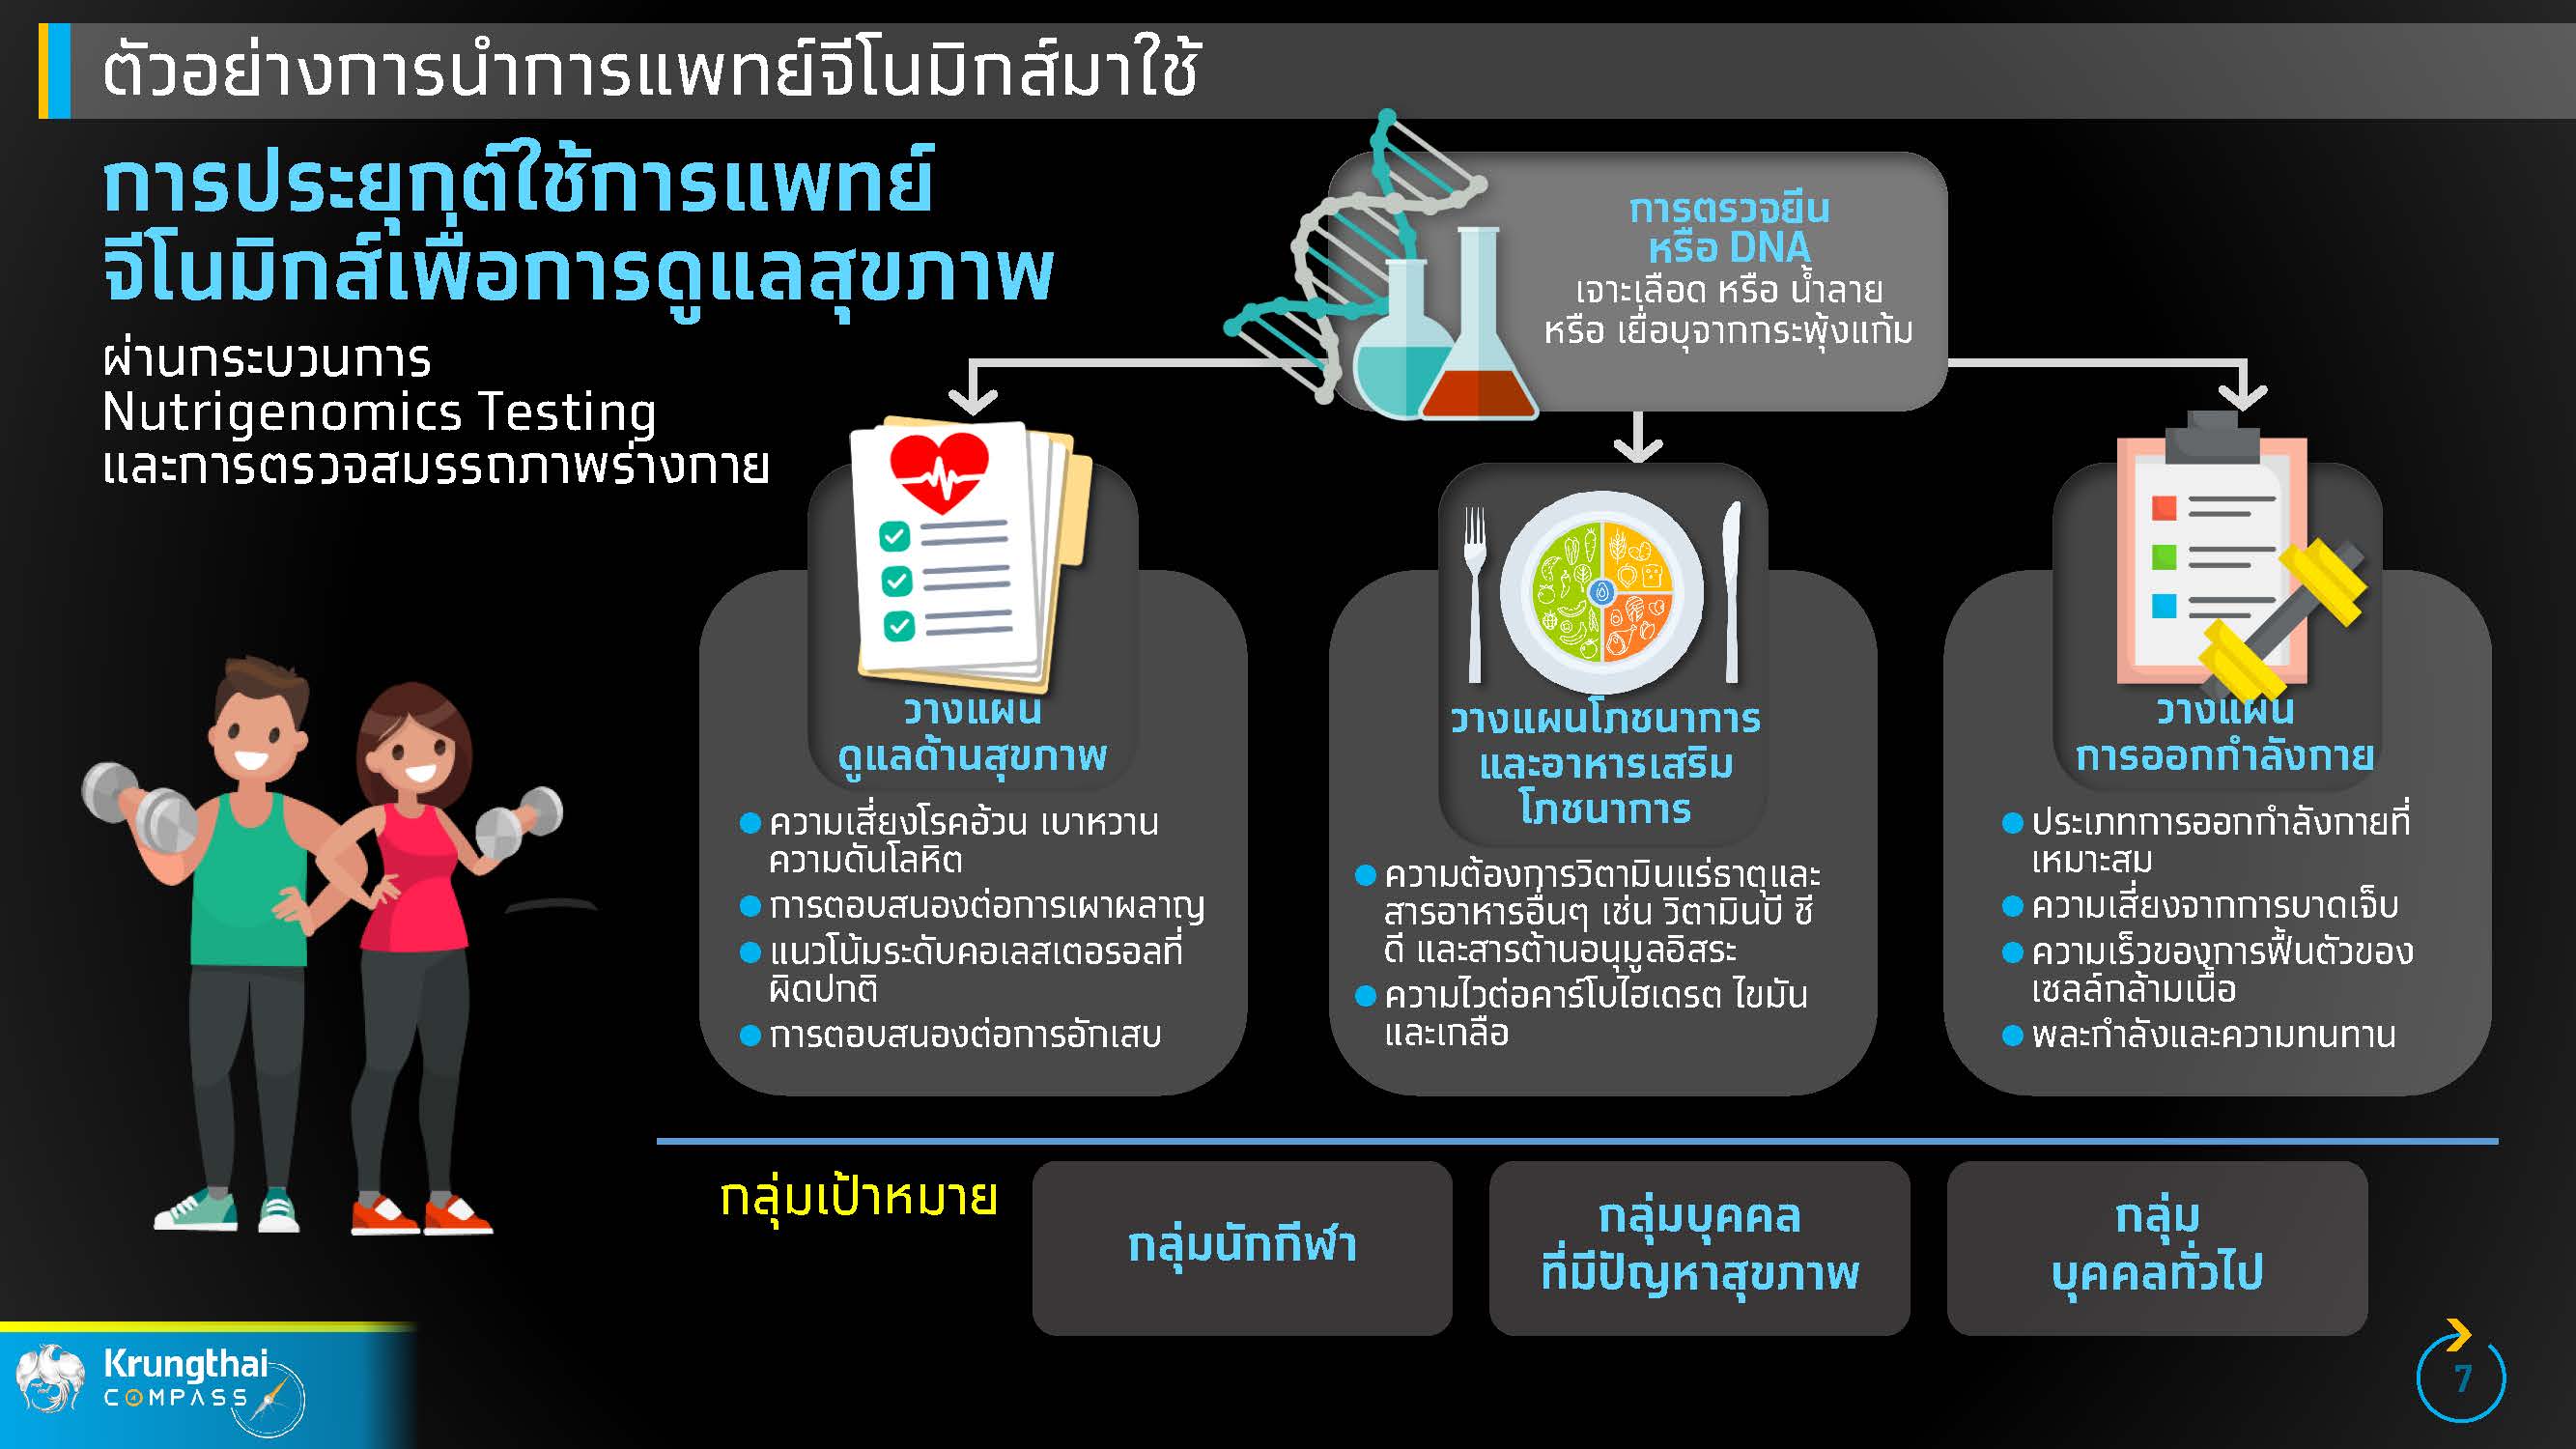 กรุงไทยชี้ การแพทย์จีโนมิกส์ จะนำไทยสู่ Medical Hub เต็มรูปแบบ